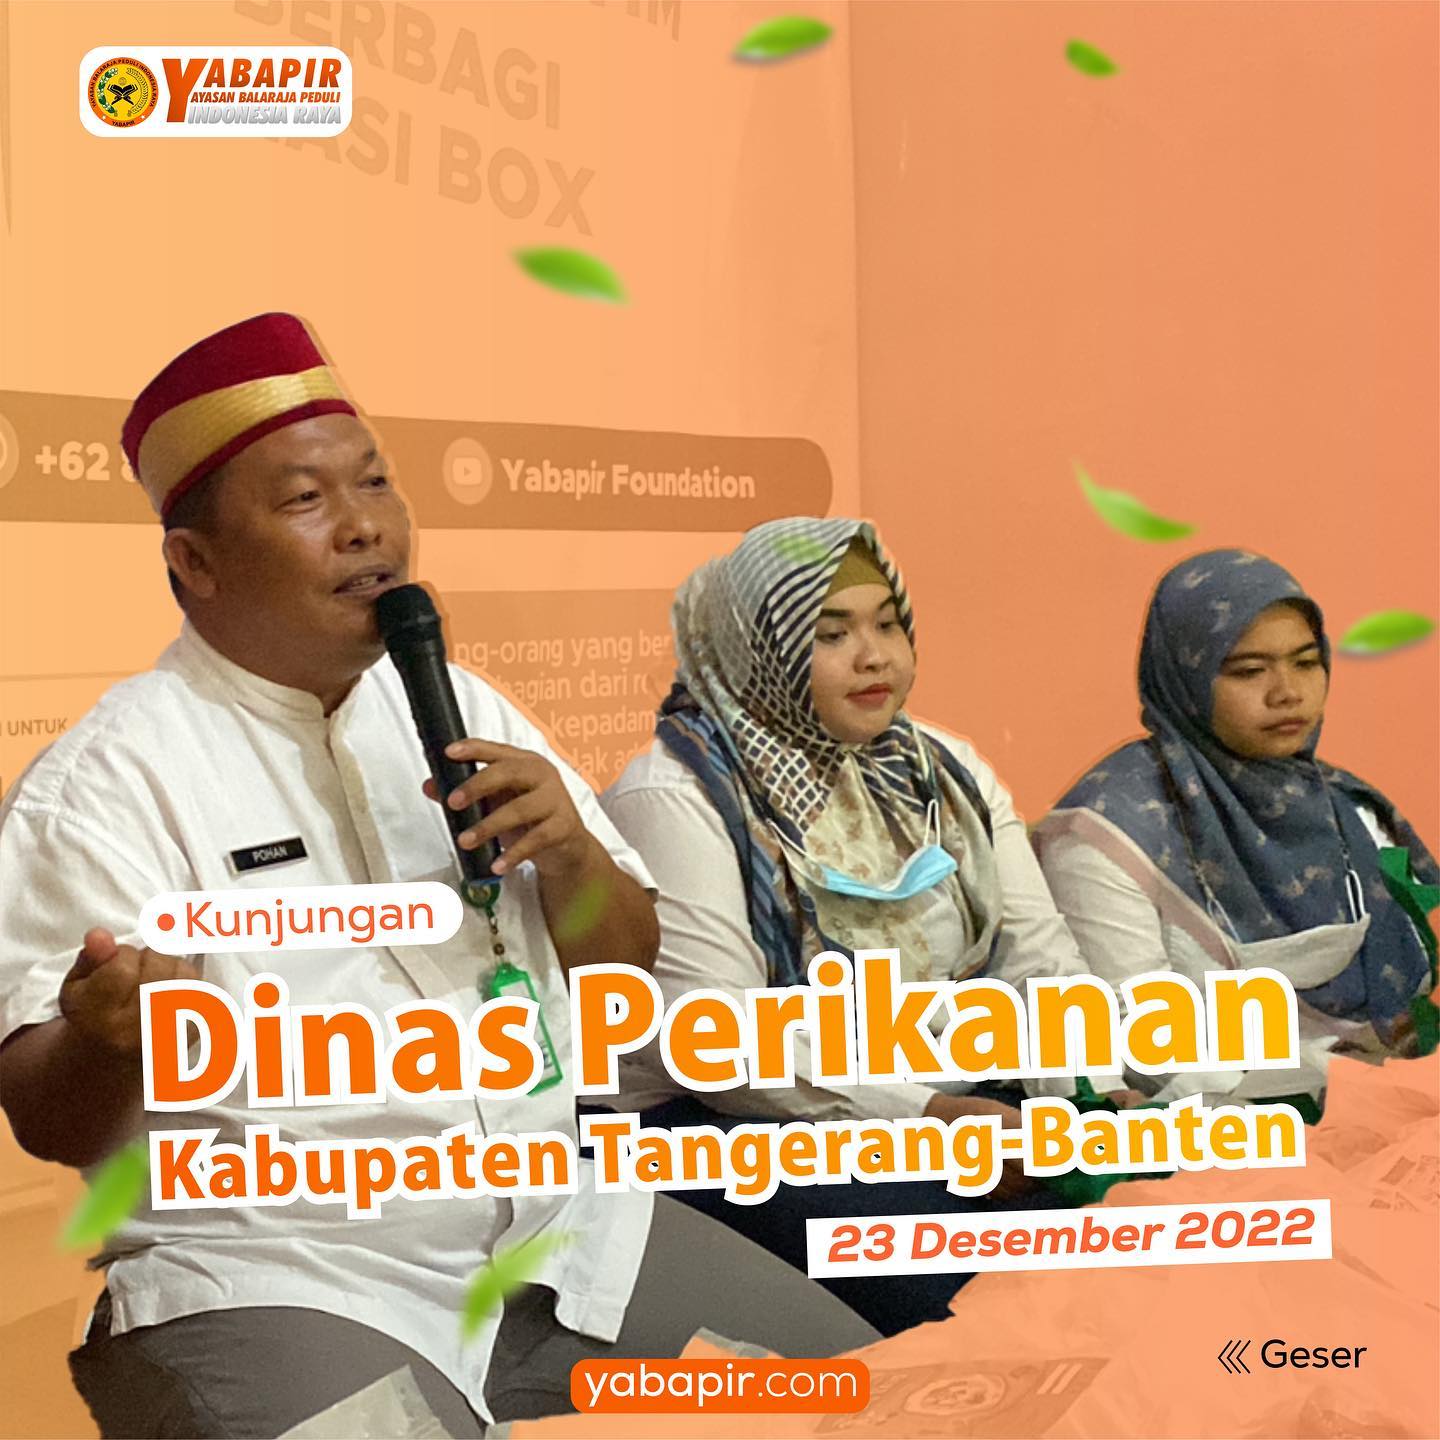 Assalamualaikum wr.wb

Kunjungan Dinas Perikanan Kabupaten Tangerang, Banten pad...